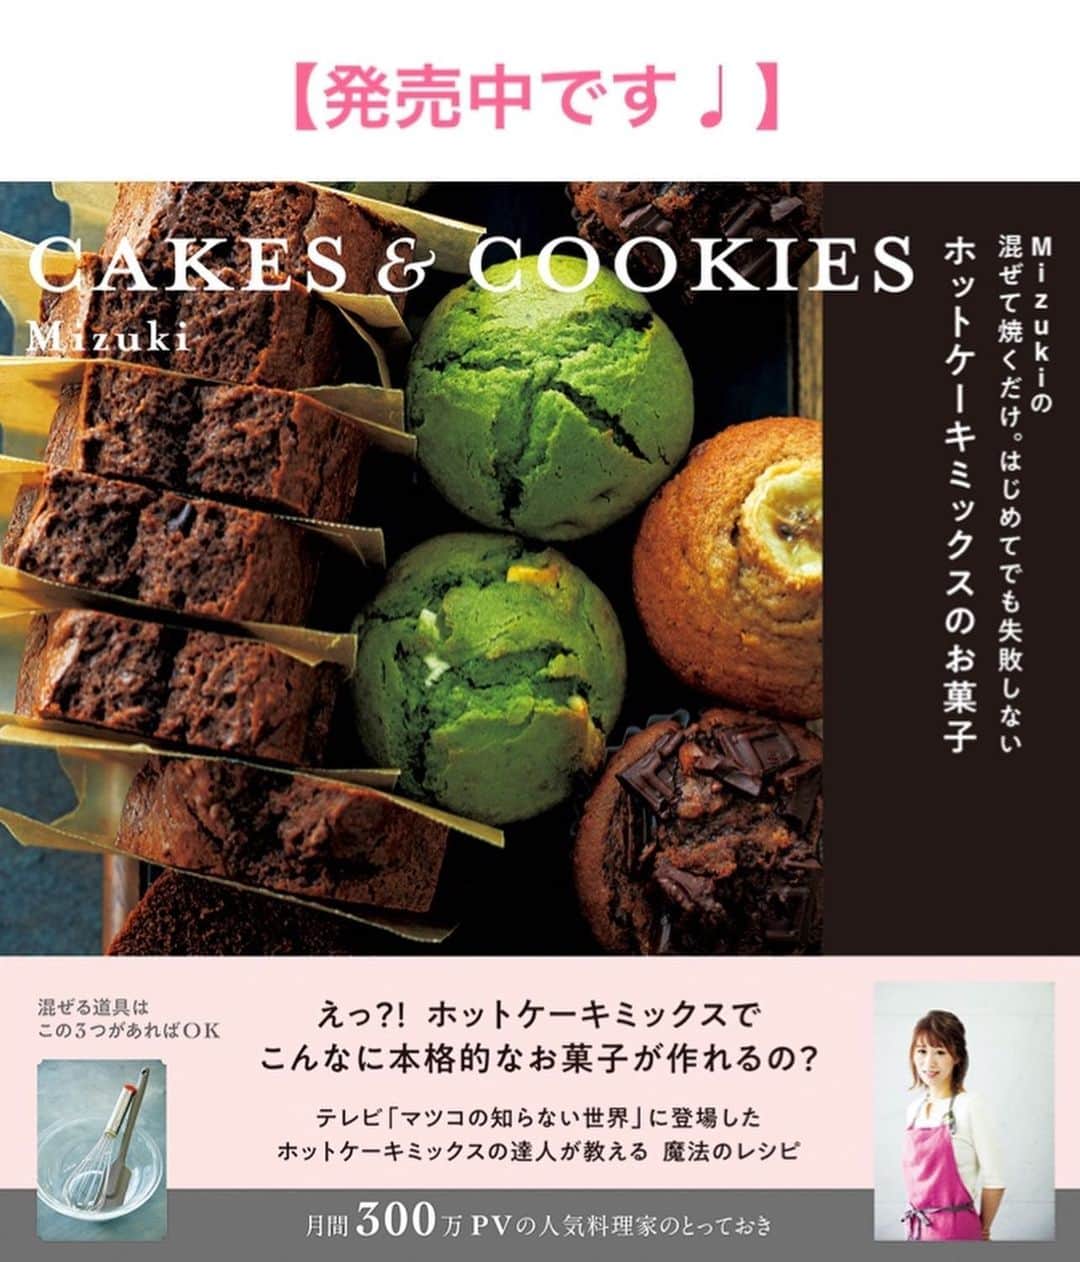 Mizuki【料理ブロガー・簡単レシピ】さんのインスタグラム写真 - (Mizuki【料理ブロガー・簡単レシピ】Instagram)「・﻿ 【レシピ】ーーーーーーーーーーーーー﻿ ♡超簡単汁なし麺♡おうちまぜそば♡﻿ ーーーーーーーーーーーーーーーーーー﻿ ﻿ ﻿ ﻿ おはようございます(*^^*)﻿ ﻿ 今日はささっとできる汁なし麺！﻿ 春休みごはんにもおすすめの﻿ ［まぜそば］をご紹介させていただきます♩﻿ ﻿ 材料も手間も極力省いた﻿ おうちで手軽に作れるレシピ♡﻿ コクのある甘辛味で﻿ 子供も大人も楽しめますよ♫﻿ ﻿ 麺、甘辛そぼろ、とろ〜りたまごを﻿ 豪快にまぜて召し上がれ(*´艸`)﻿ 大人は仕上げにラー油もどうぞ♩﻿ ﻿ ﻿ ﻿ ーーーーーーーーーーーーーーーーーーー﻿ 【2人分】﻿ 中華麺...2玉﻿ 豚ひき肉...150g﻿ ニラ...1/2束﻿ ごま油...小2﻿ ●オイスターソース...大1﻿ ●醤油...小2﻿ ●砂糖...小1﻿ 卵黄...2個﻿ (好みで)白ごま・ラー油...各適量﻿ ﻿ 1.鍋に湯を沸かし、中華麺を袋の表示通りに茹でてザルに上げ、等分して器に盛り付けておく。﻿ 2.ニラは1cm幅に切る。フライパンにごま油を入れて中火で熱し、ひき肉を炒める。火が通ったらニラと●も加え、1分程炒め合わせる。﻿ 3. 2を麺の上に等分してのせ、卵黄をトッピングし、ごまとラー油をかける。﻿ ーーーーーーーーーーーーーーーーーーー﻿ ﻿ ﻿ ﻿ 《ポイント》﻿ ♦︎中華麺の代わりにうどんやごはんにのせても美味しいです♩﻿ ﻿ ﻿ ﻿ ﻿ ﻿ ＿＿＿＿＿＿＿＿＿＿＿＿＿＿＿＿＿﻿ ＿＿＿＿＿＿＿＿＿＿＿＿＿＿＿＿＿﻿ 🎀新刊発売中🎀﻿ 【#ホットケーキミックスのお菓子 】﻿ ﻿ 今回は一冊まるっとホケミスイーツ♩﻿ 普段のおやつから﻿ 特別な日にも使えるレシピを﻿ この一冊に詰め込みました(*^^*)﻿ ホットケーキミックスを使えば﻿ 簡単に本格的なお菓子が作れますよ♡﻿ 春休みのおやつ作りにも﻿ よかったらご活用下さい♫﻿ ﻿ 🔹ハイライトにリンクあります♩🔹﻿ ＿＿＿＿＿＿＿＿＿＿＿＿＿＿＿＿＿﻿ ＿＿＿＿＿＿＿＿＿＿＿＿＿＿＿＿＿﻿ ﻿ ﻿ ﻿ 【お知らせ】﻿ ストーリーズでは一日数回﻿ 別レシピをご紹介しております(*^^*)﻿ ＊コメントは最新の投稿にお願い致します！﻿ ﻿ ﻿ ﻿ ﻿ #ブログ更新しました﻿ ブログはプロフ画面のリンクよりご覧下さい↓﻿ (@mizuki_31cafe )﻿ 【Mizuki公式ラインブログ】﻿ https://lineblog.me/mizuki_official/﻿ ﻿ ﻿ ﻿ ﻿ ﻿ #まぜそば#台湾風まぜそば#ひき肉#甘辛#麺#春休みごはん﻿ #Mizuki#簡単レシピ#時短レシピ#節約レシピ#料理#レシピ#フーディーテーブル#おうちごはん#おうちカフェ#デリスタグラマー#料理好きな人と繋がりたい#料理ブロガー#おうちごはんlover#器#マカロニメイト#ブログ﻿ #foodpic#follow#cooking#recipe#lin_stagrammer#まぜそばm」3月3日 7時24分 - mizuki_31cafe